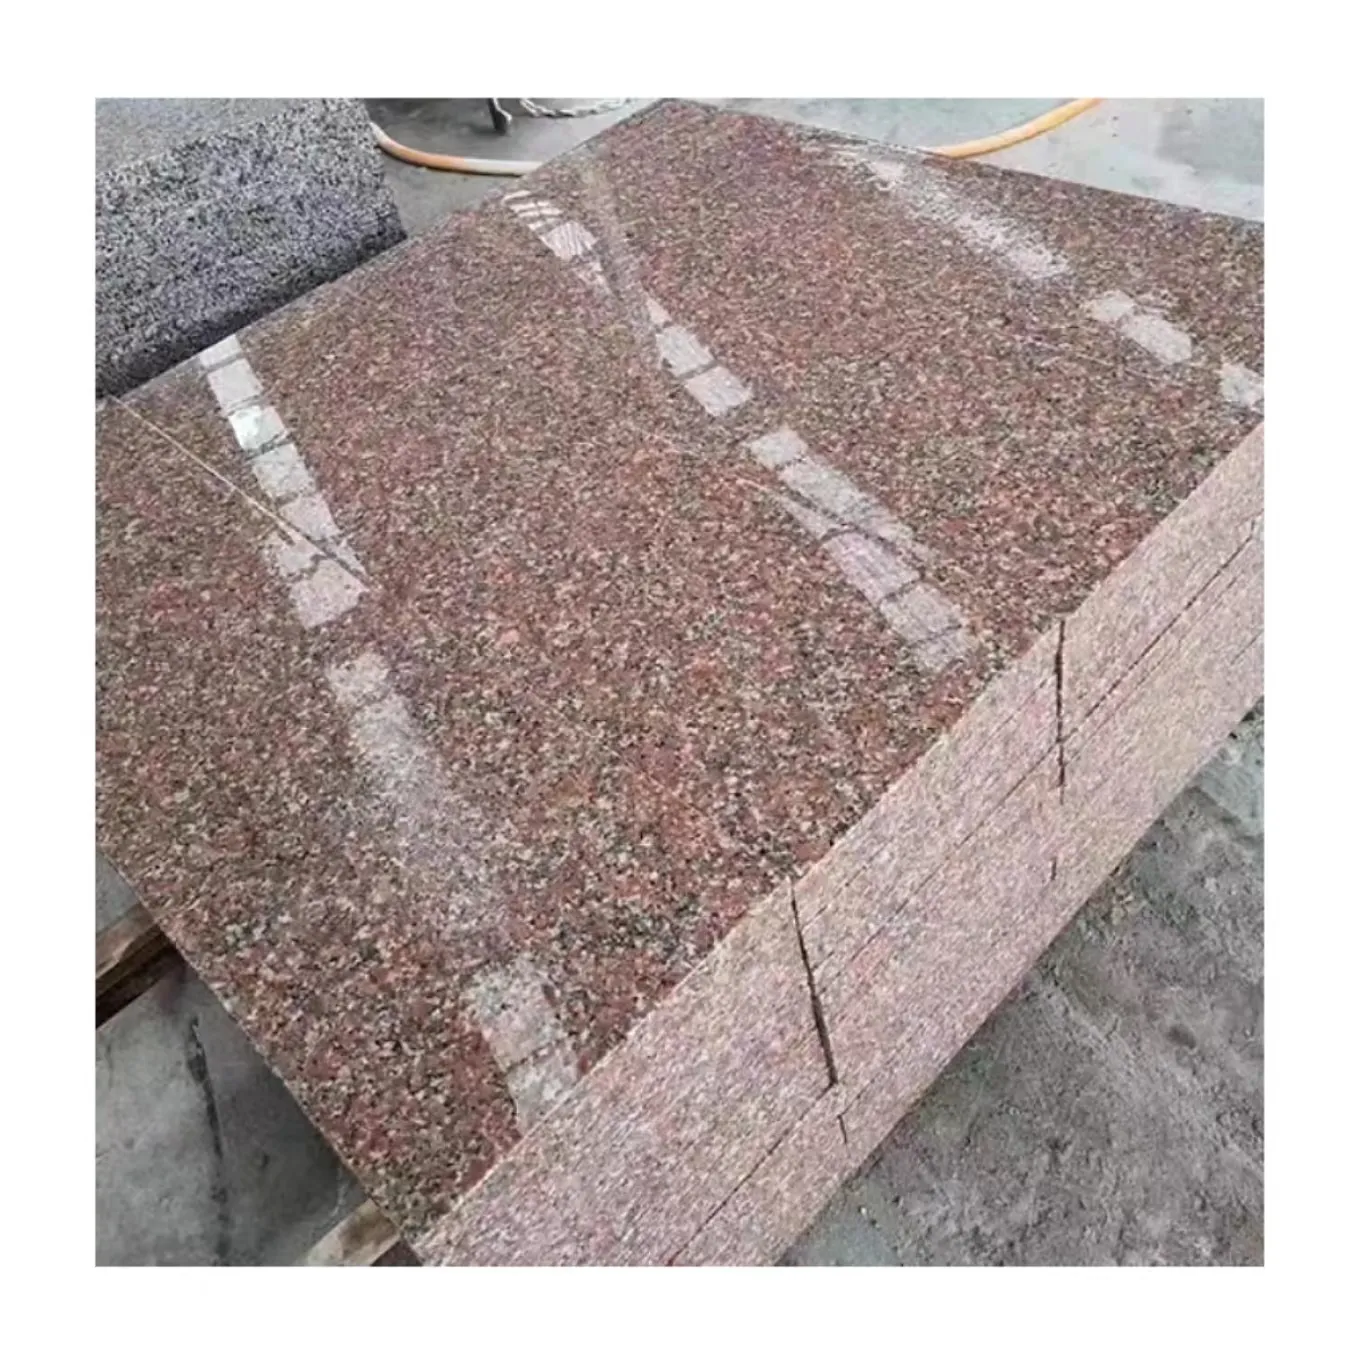 Commercio all'ingrosso cinese acero rosso granito marmo naturale pietra piano di scale lucido fiammato lastra di granito personalizzato